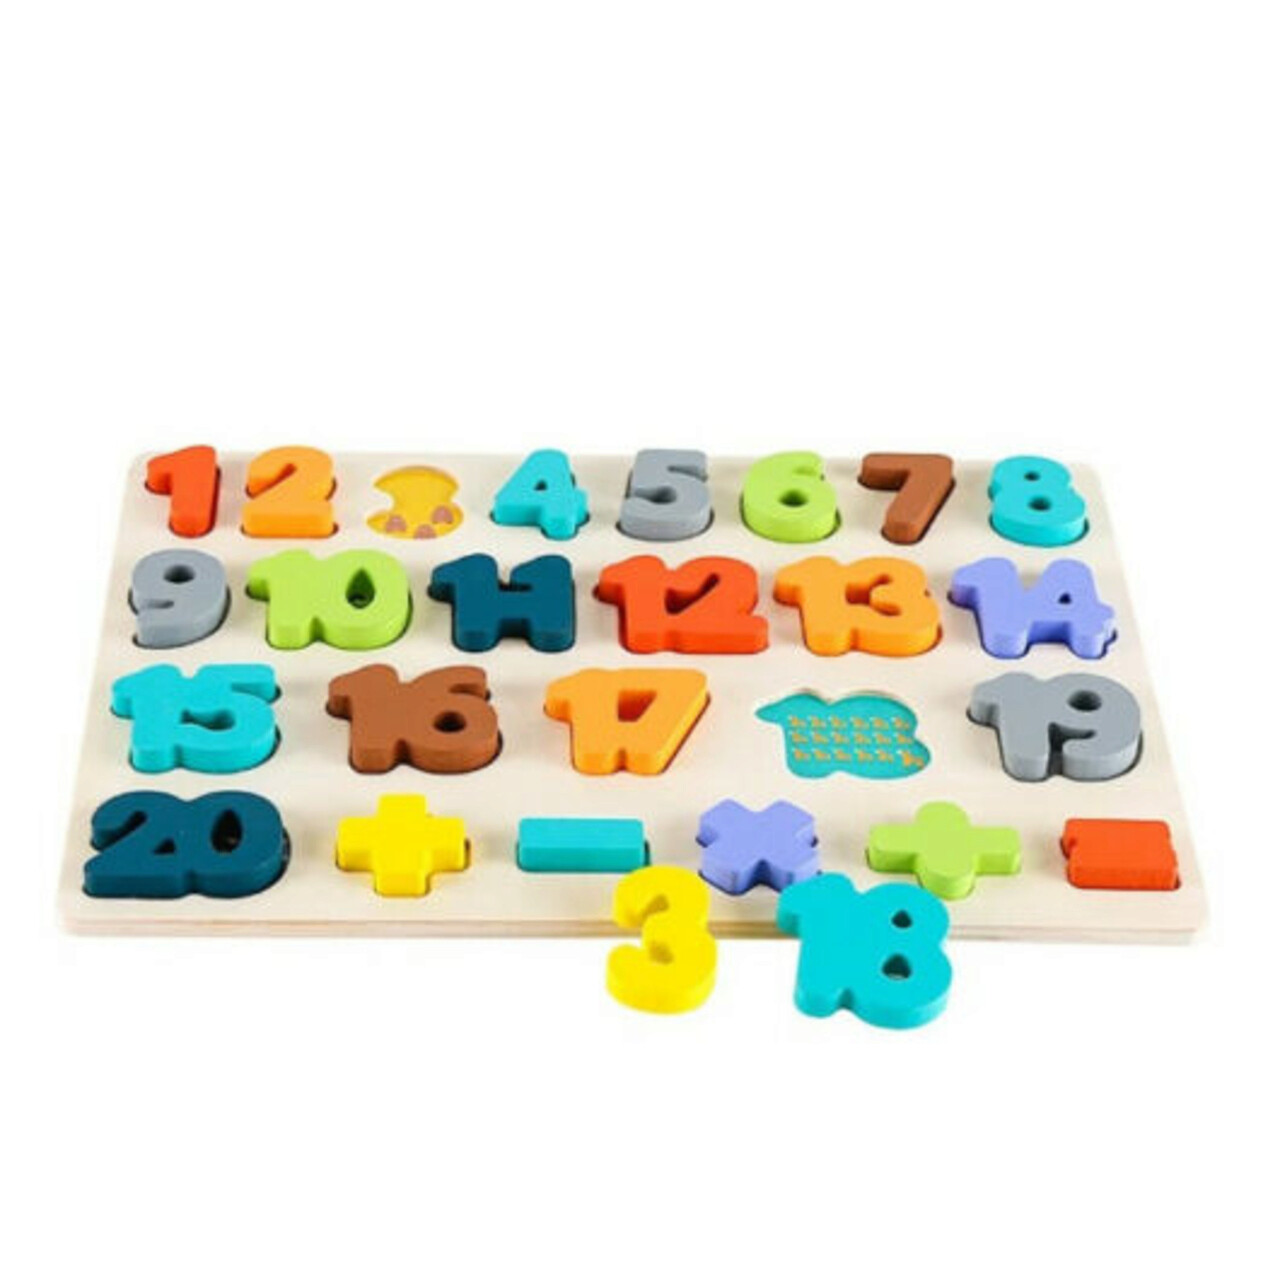 jocuri cu numere de la 1 la 10 Puzzle incastru din lemn cu numere de la 1 la 20, 26 bucati, Phoohi, PH07J012, multicolor